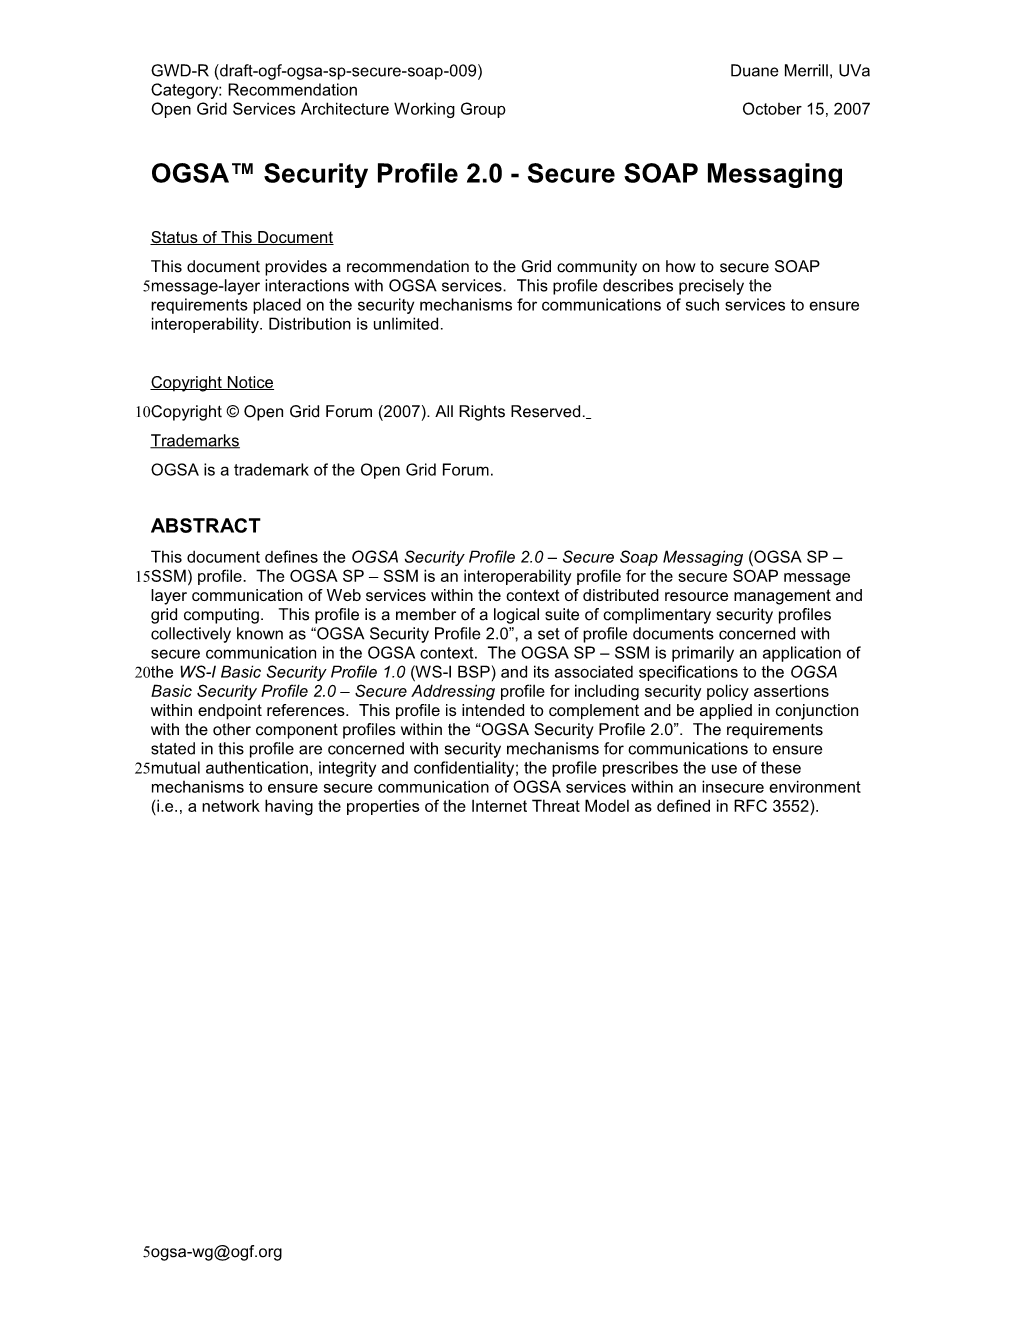 OGSA Security Profile 2.0 - Secure SOAP Messaging